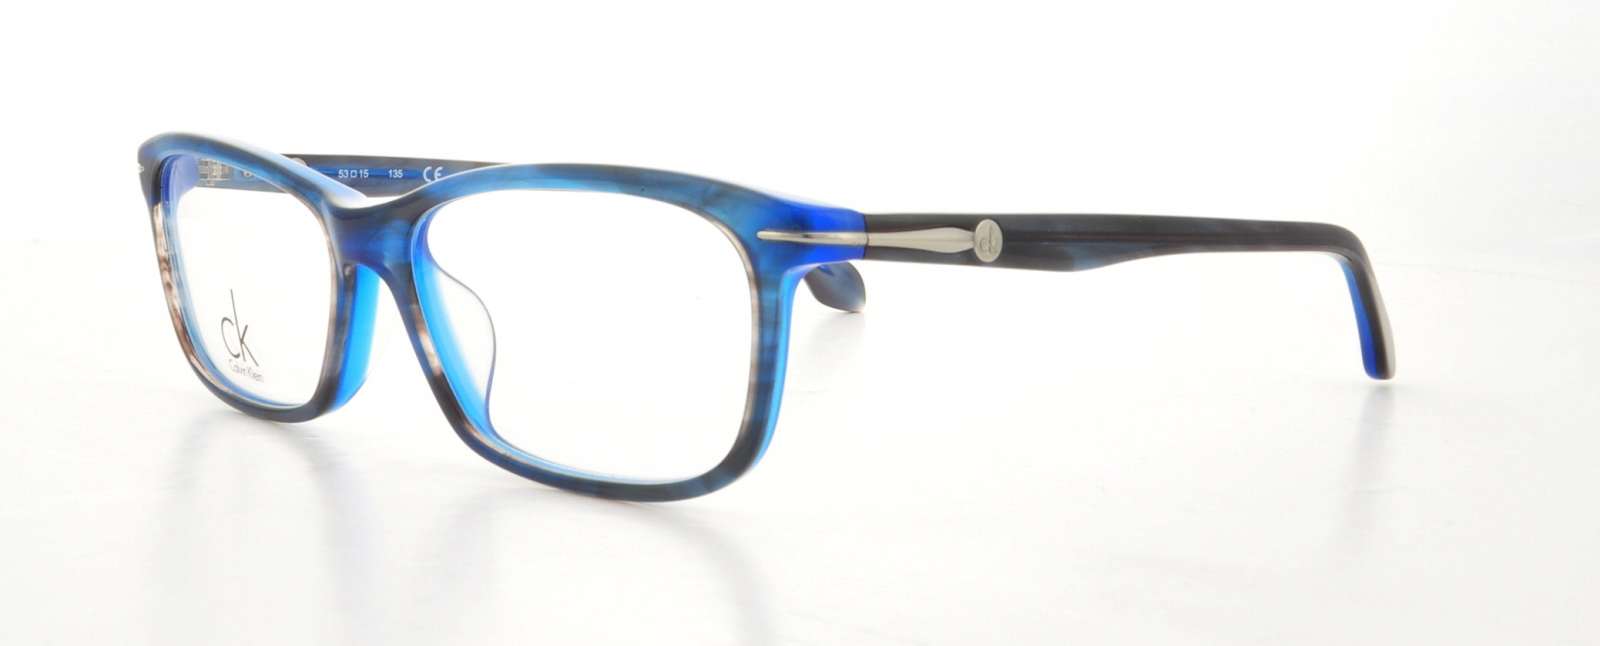 Picture of Calvin Klein Platinum Eyeglasses 5779